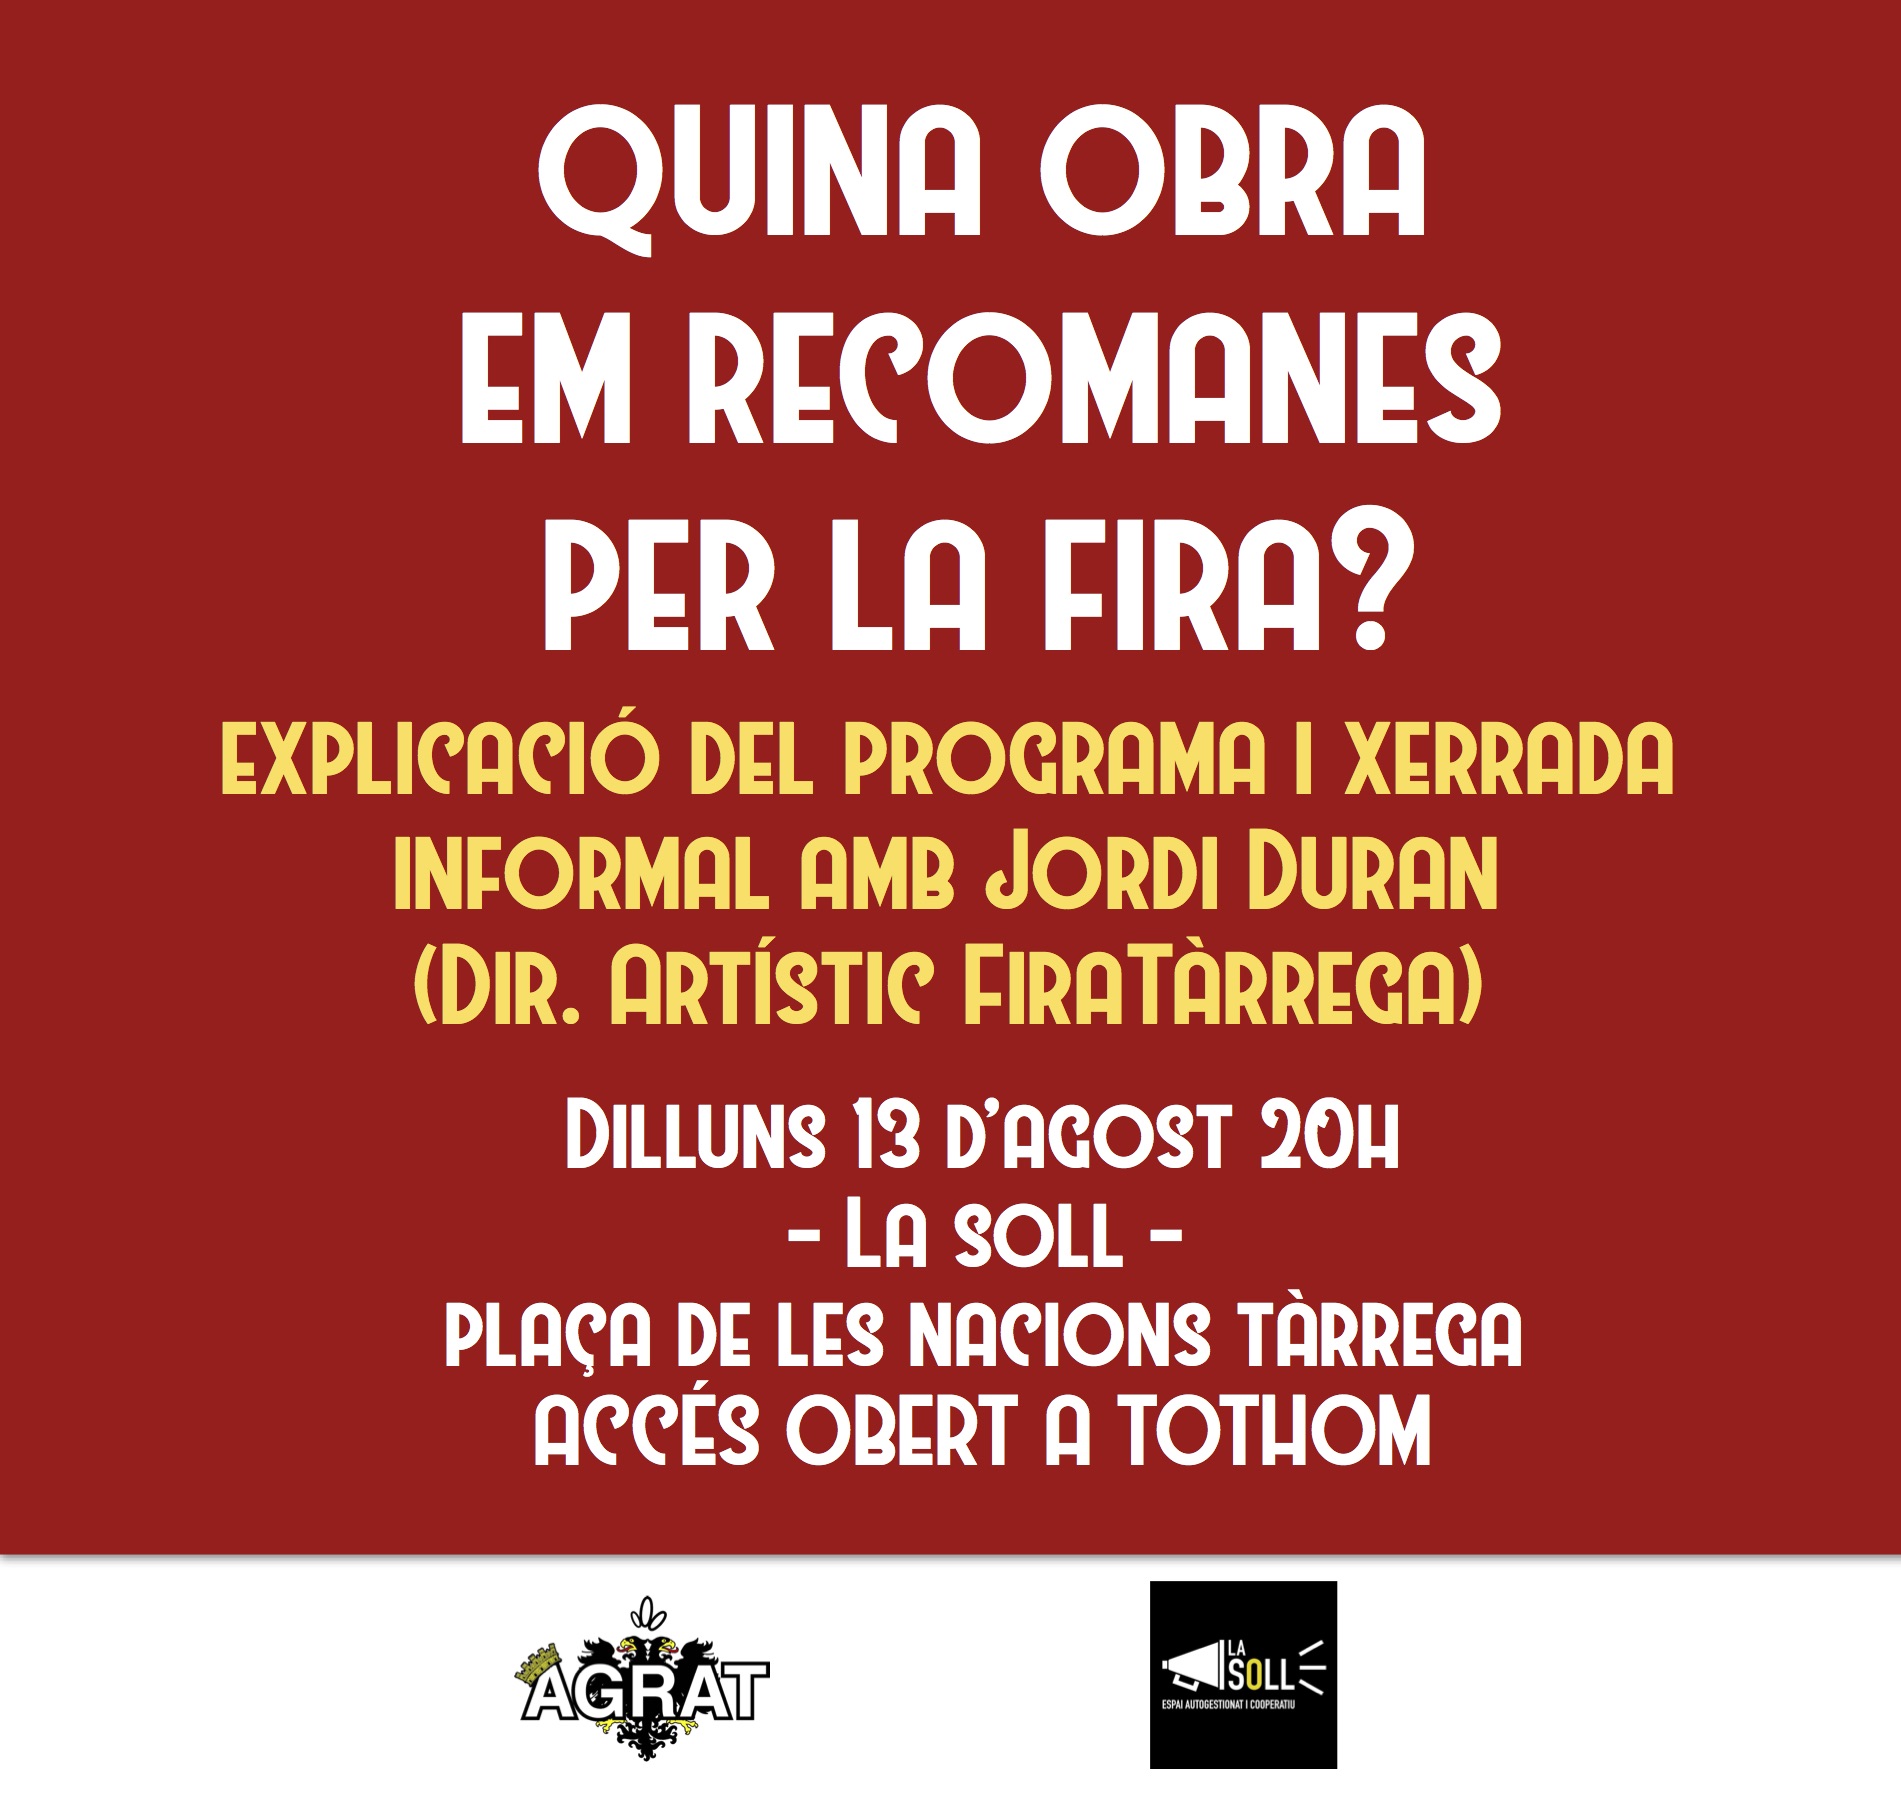 L’Agrat i La Soll organitzen una xerrada amb Jordi Duran per saber “Quina obra em recomanes per la Fira?”